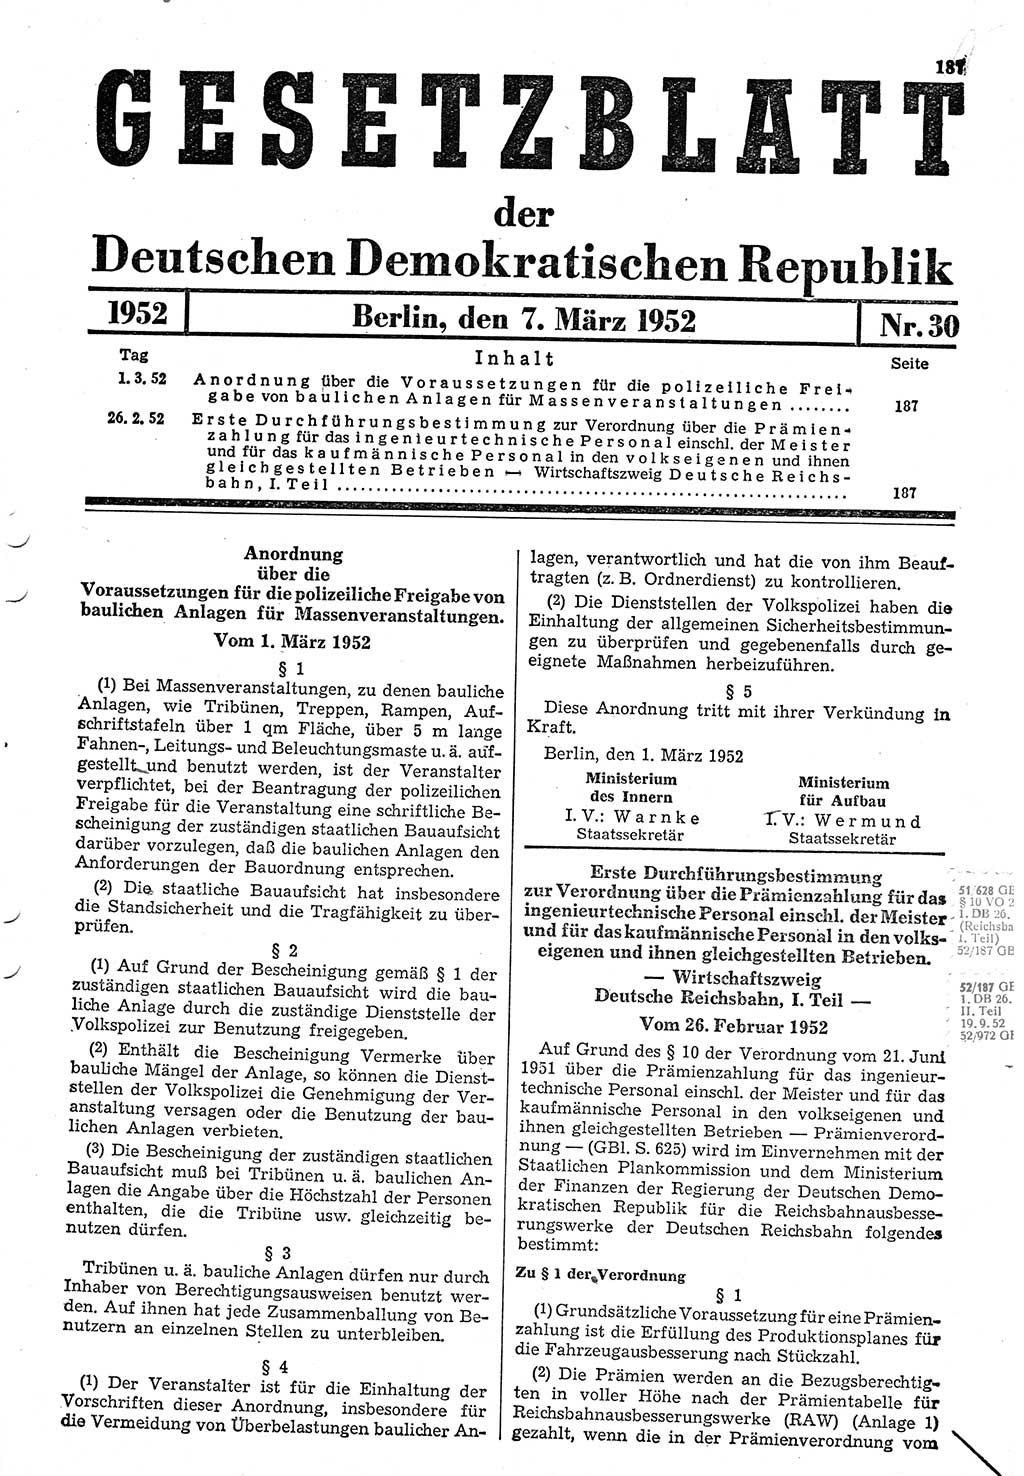 Gesetzblatt (GBl.) der Deutschen Demokratischen Republik (DDR) 1952, Seite 187 (GBl. DDR 1952, S. 187)